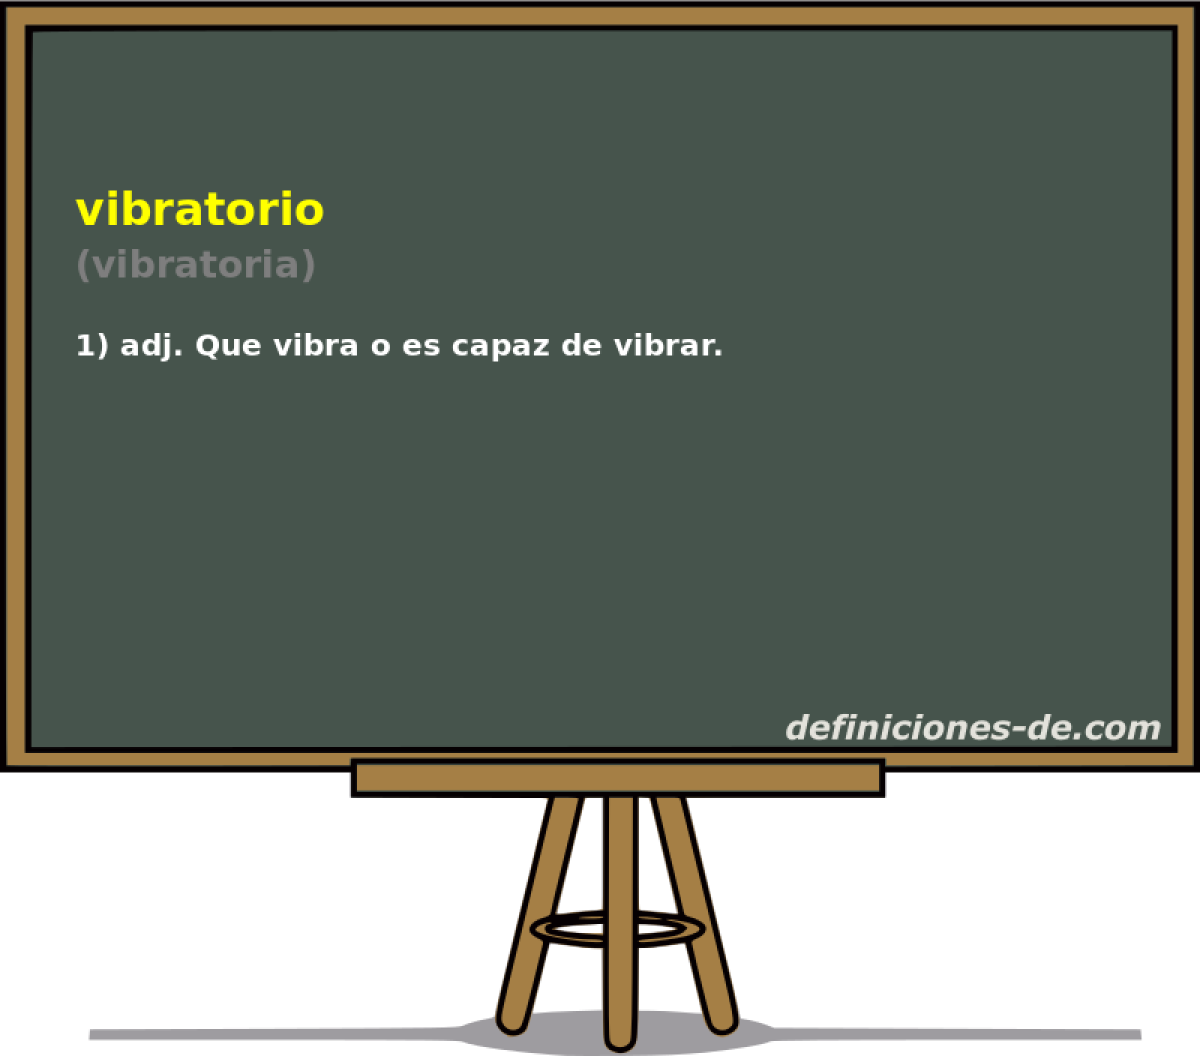 vibratorio (vibratoria)